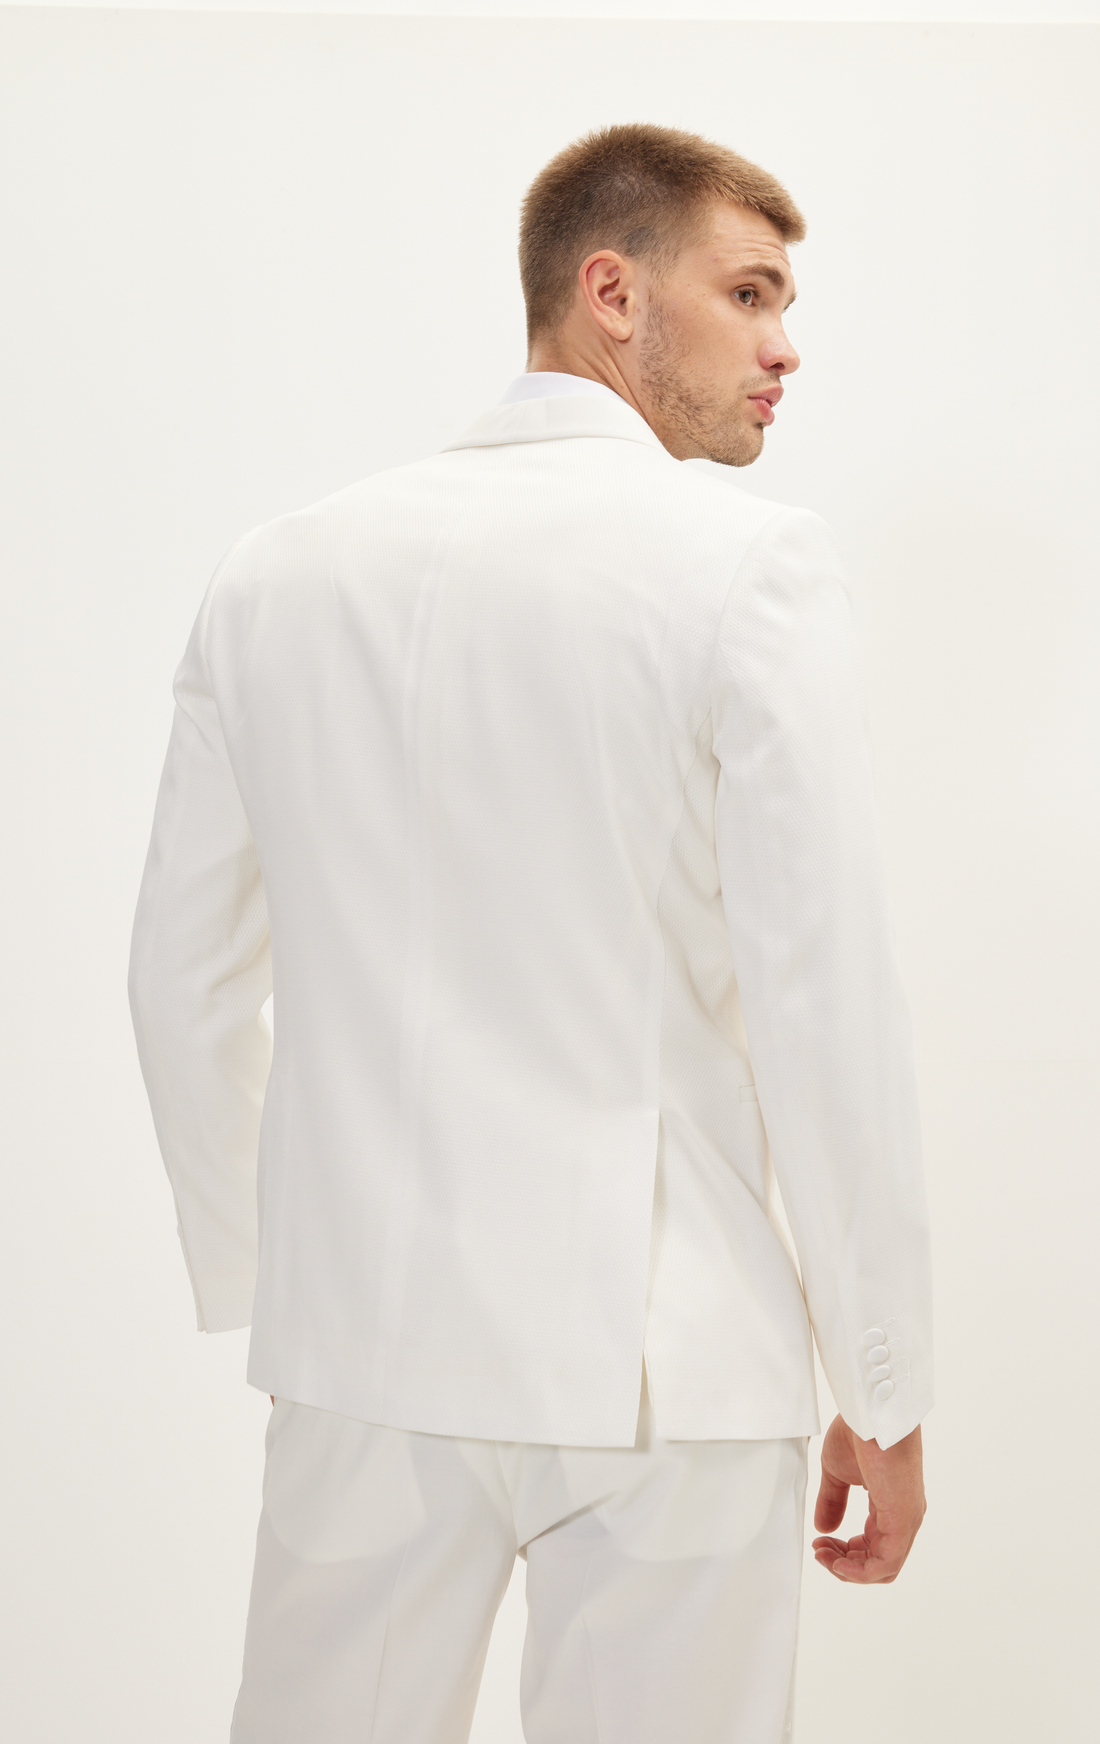 European Fit Tuxedo Jacket With Pants - White